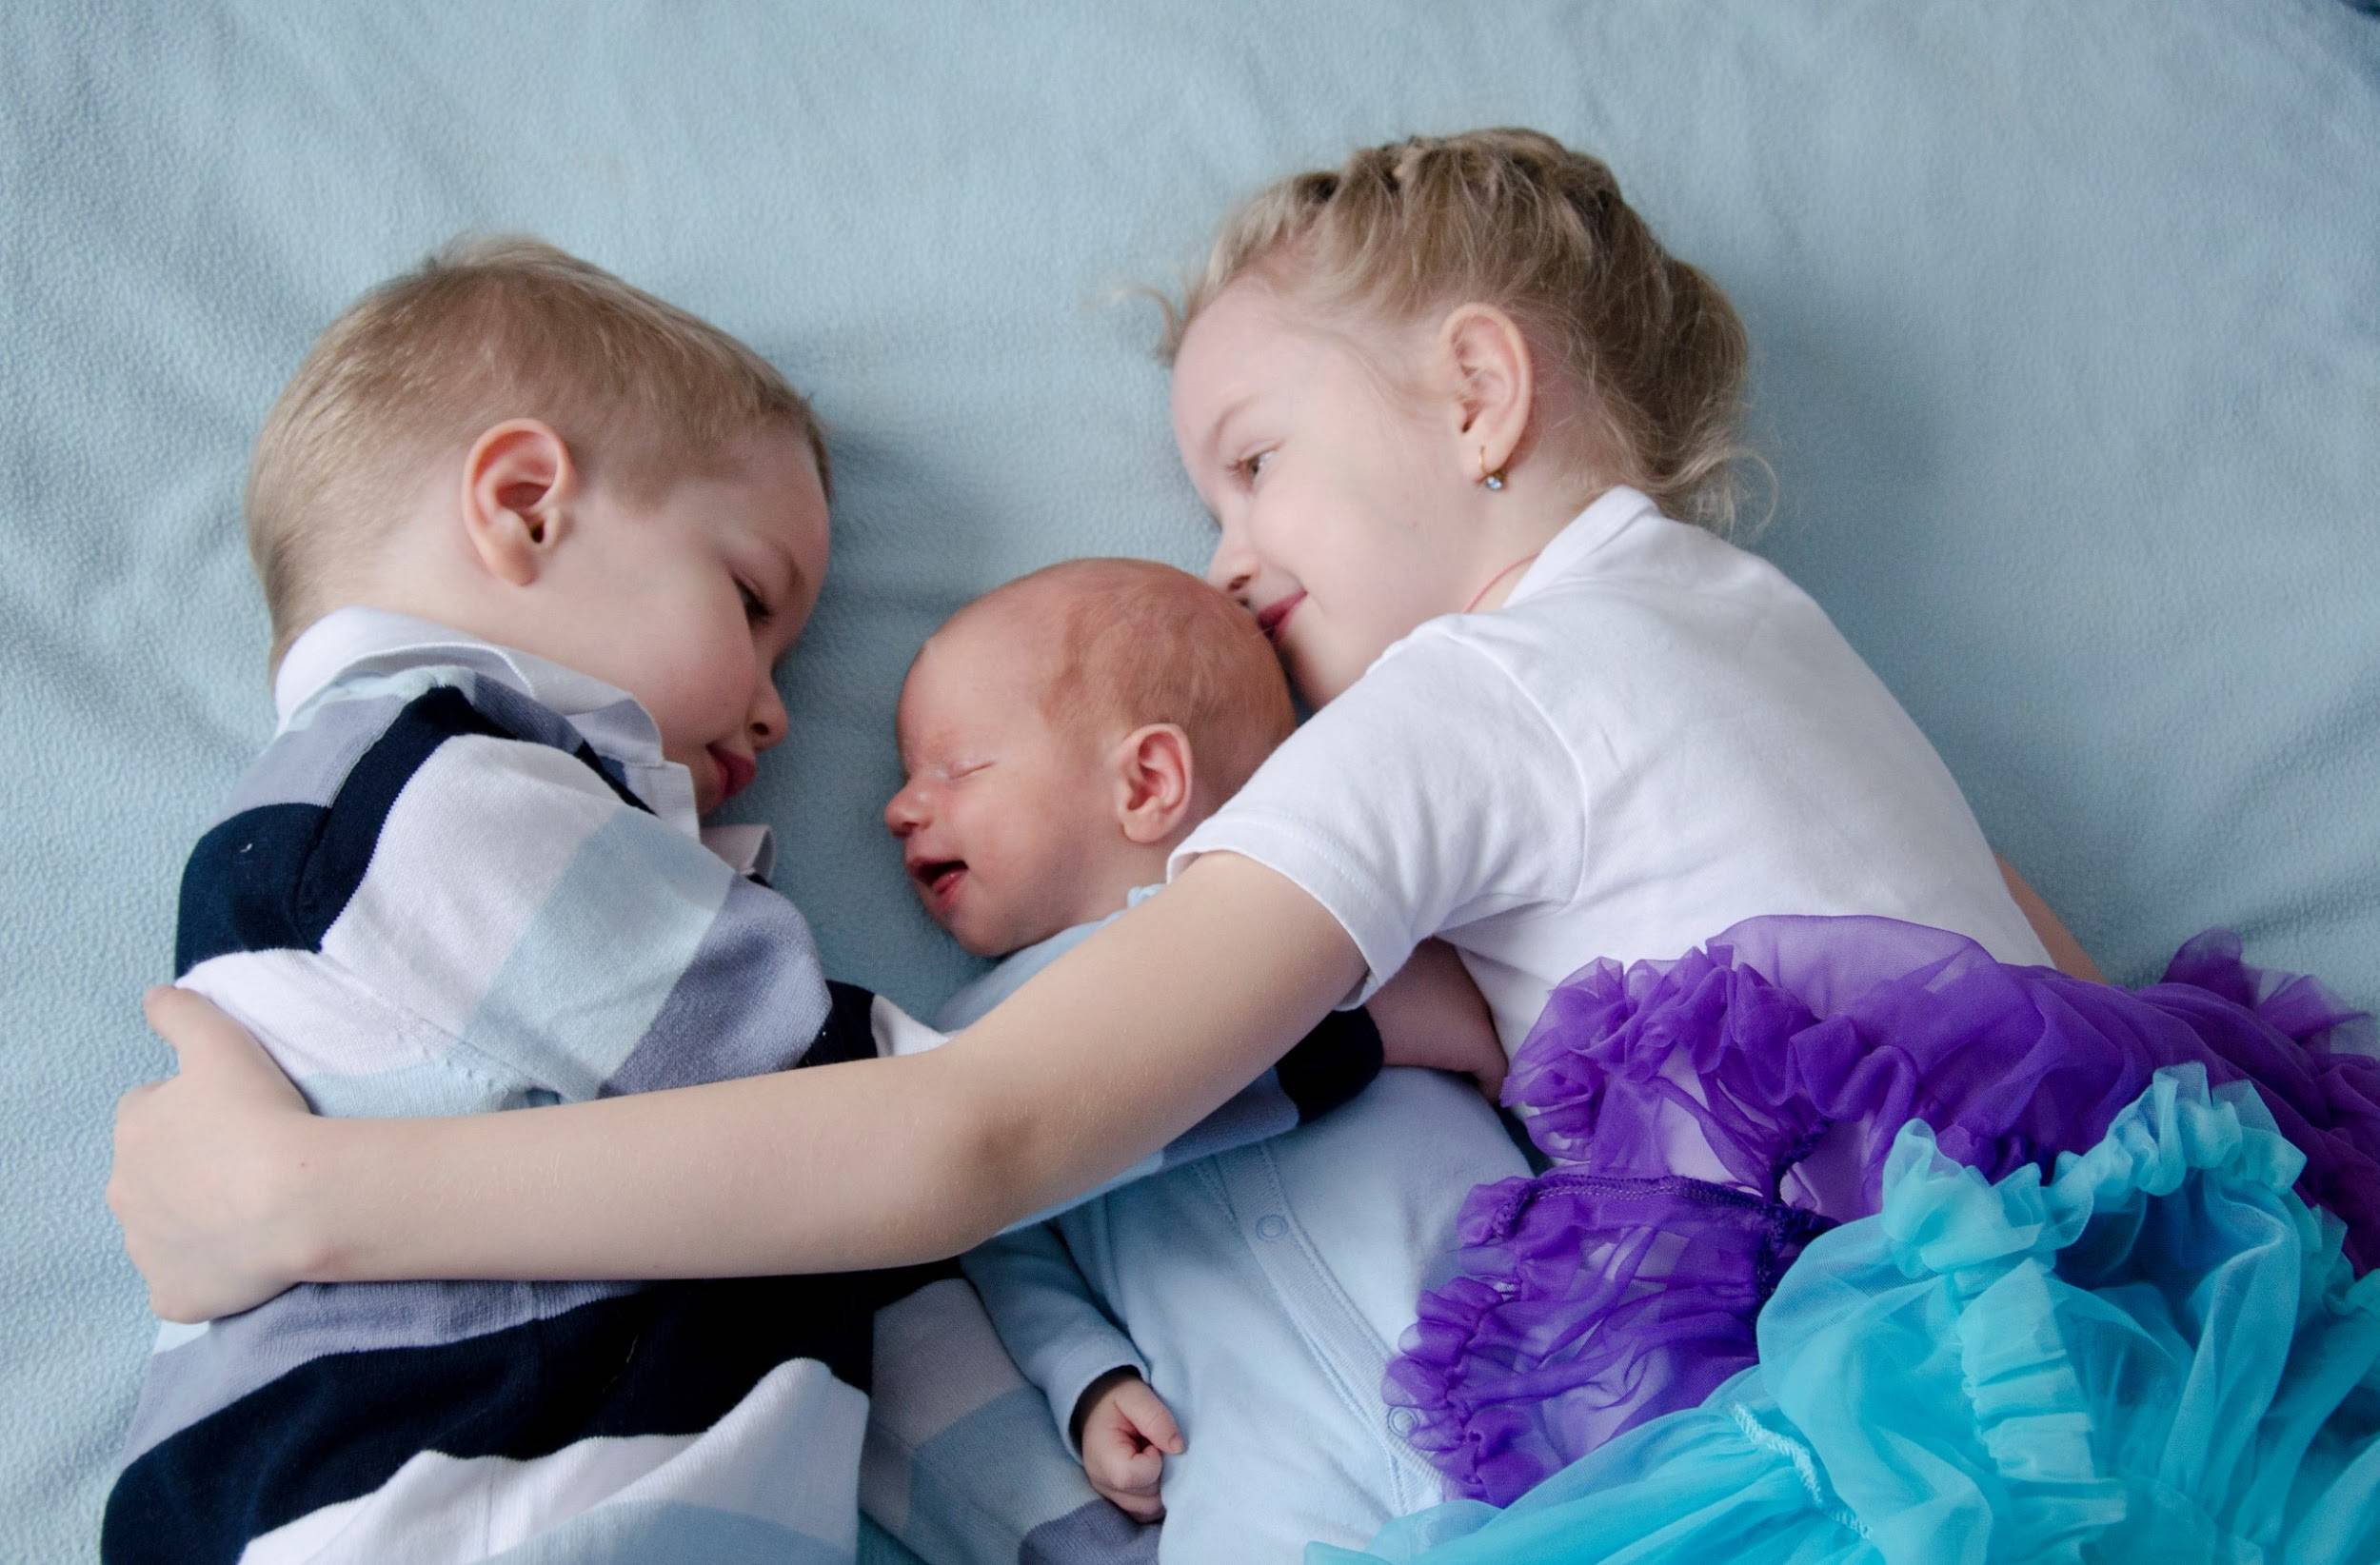 Рожать ли третьего ребенка: стоит ли увеличивать семью, какие будут последствия?